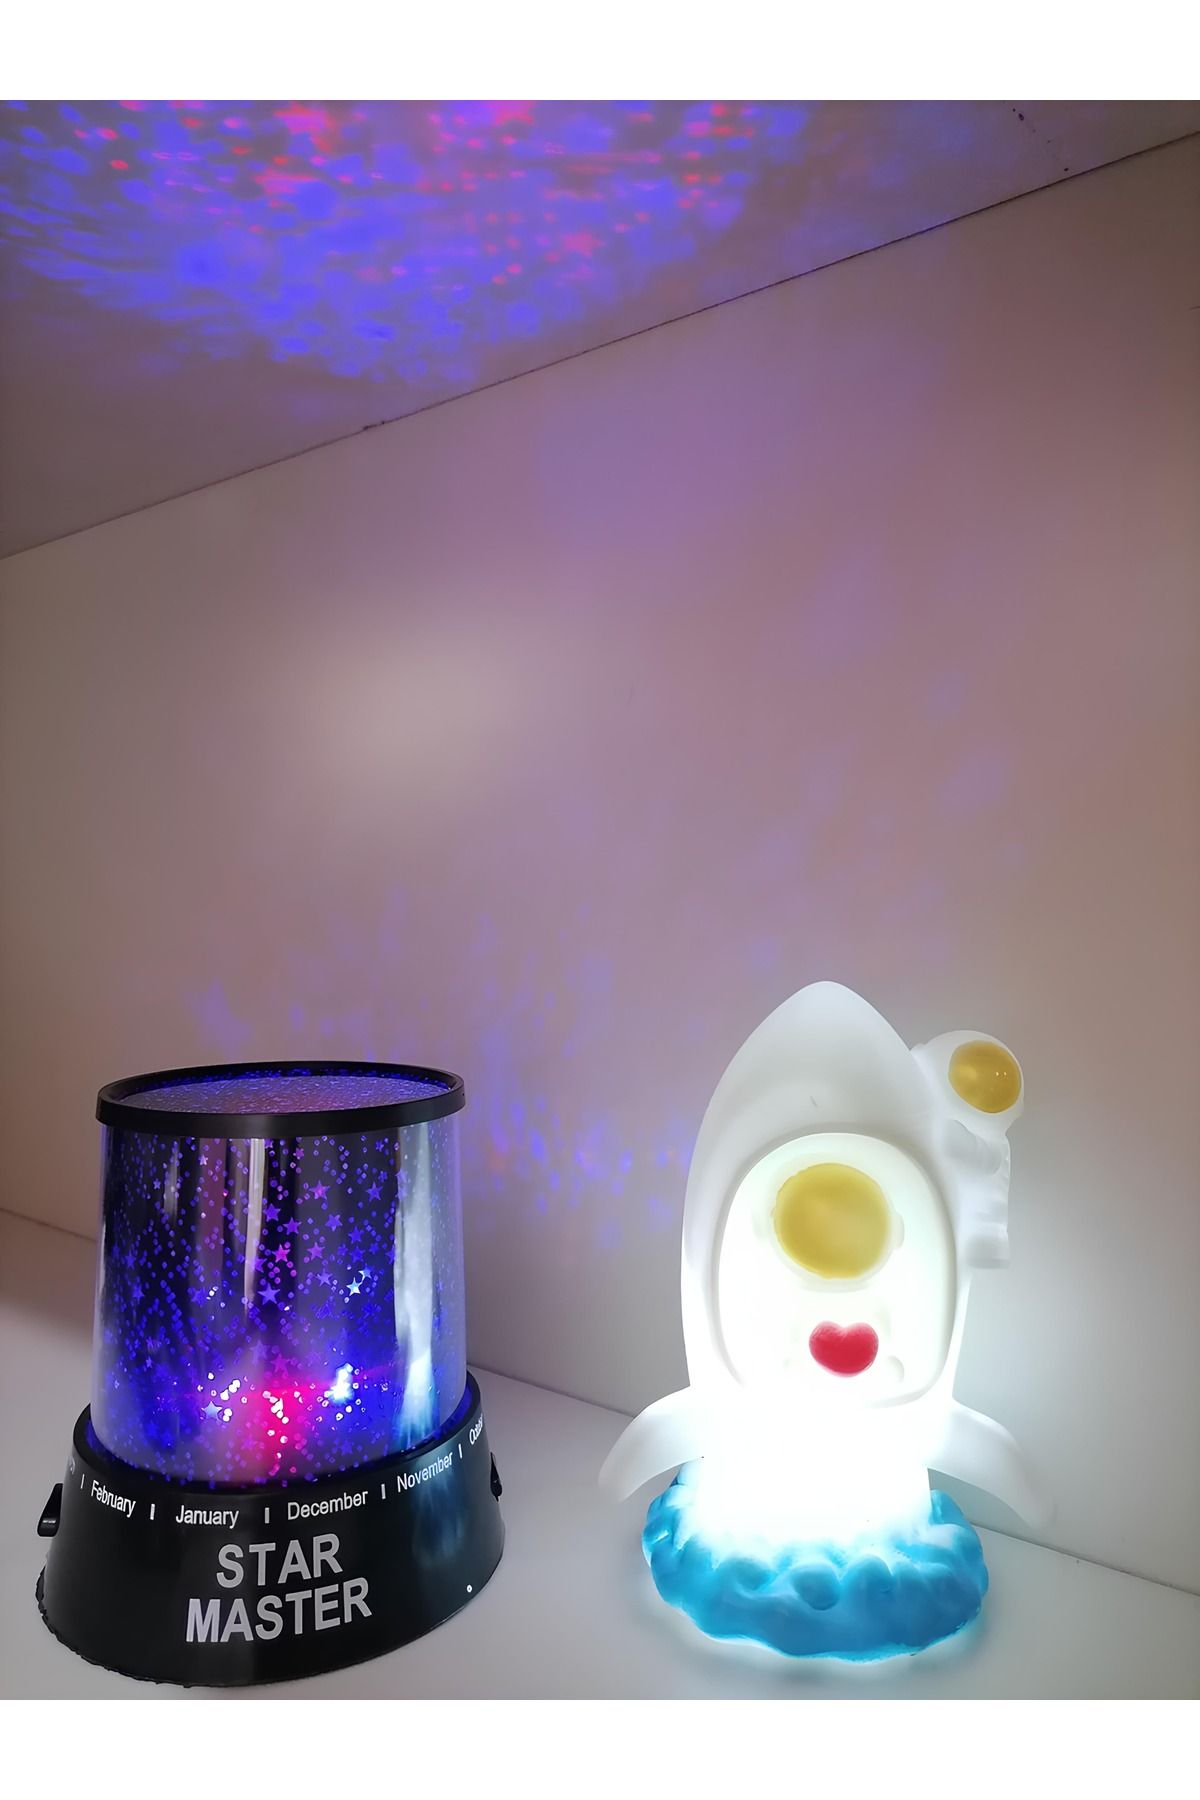 Işık kasabası Yıldız yansımalı RCB Star Master ve Astronot LED gece lambası hediye kutusu